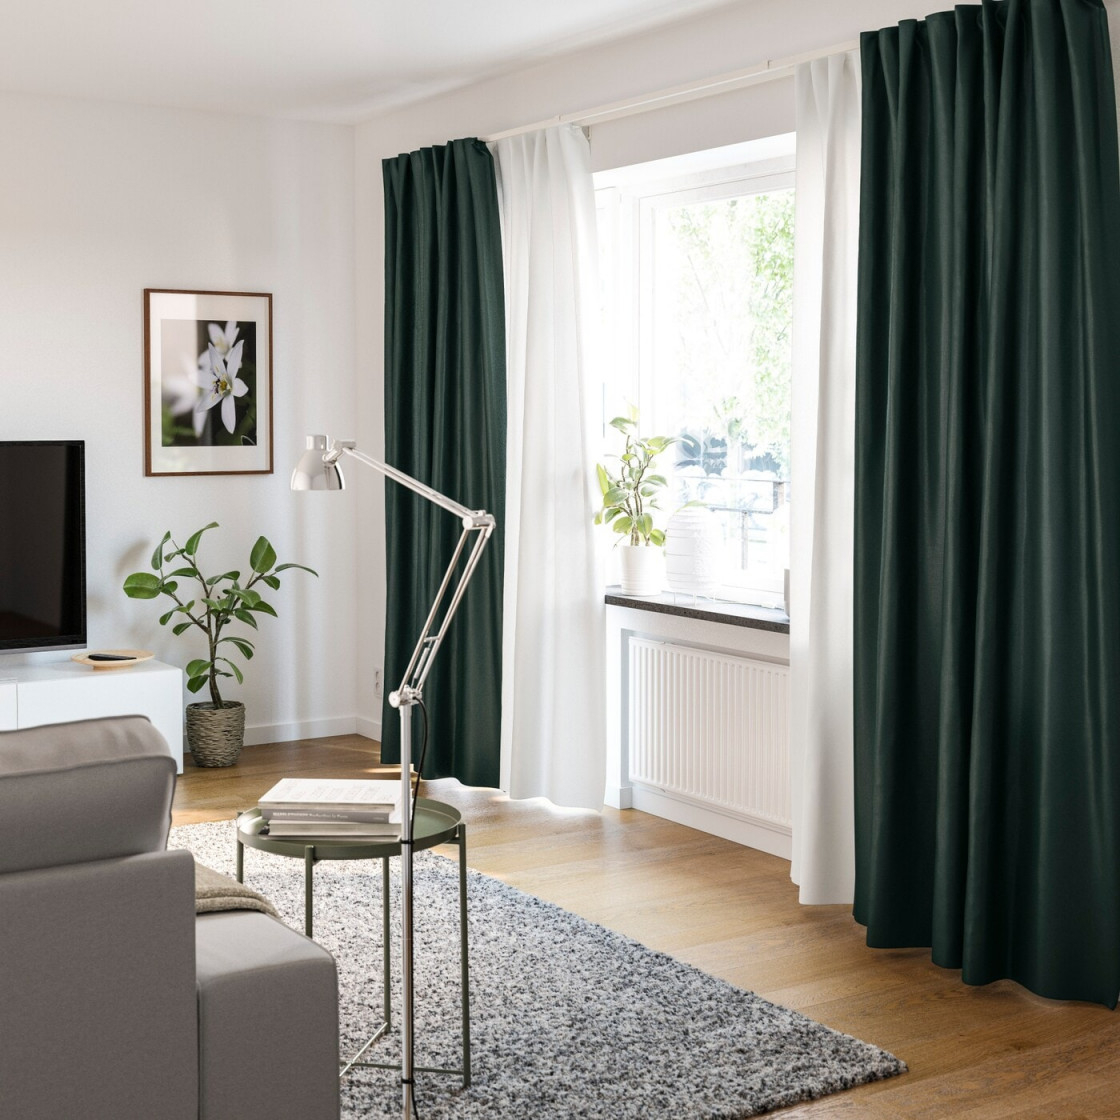 Gardinenideen Inspirationen Für Dein Zuhause  Ikea von Gardinen Für Wohnzimmer Ideen Photo